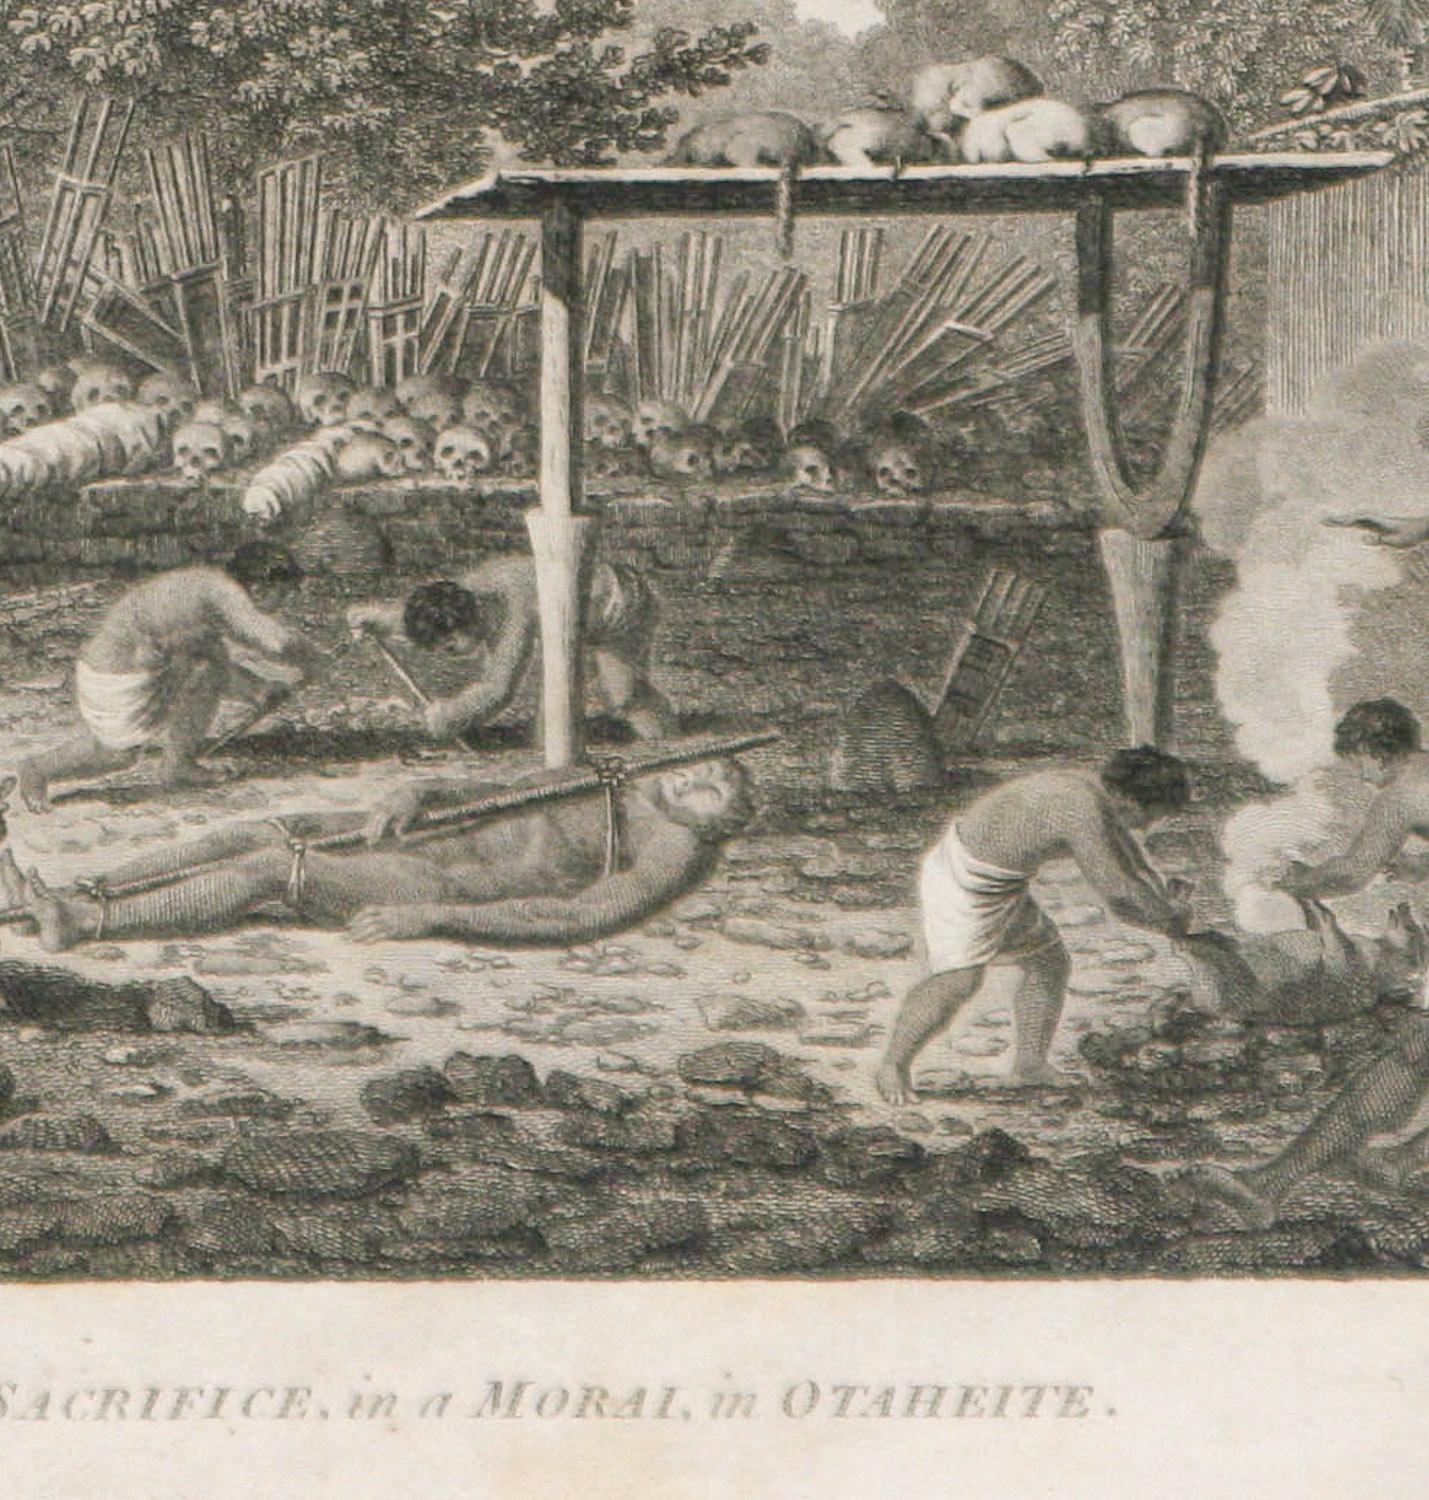 Ein Menschenopfer in einer Morai, in Otaheite (Tahiti) 1784 James Cooks letzte Reise (Grau), Landscape Print, von John Webber